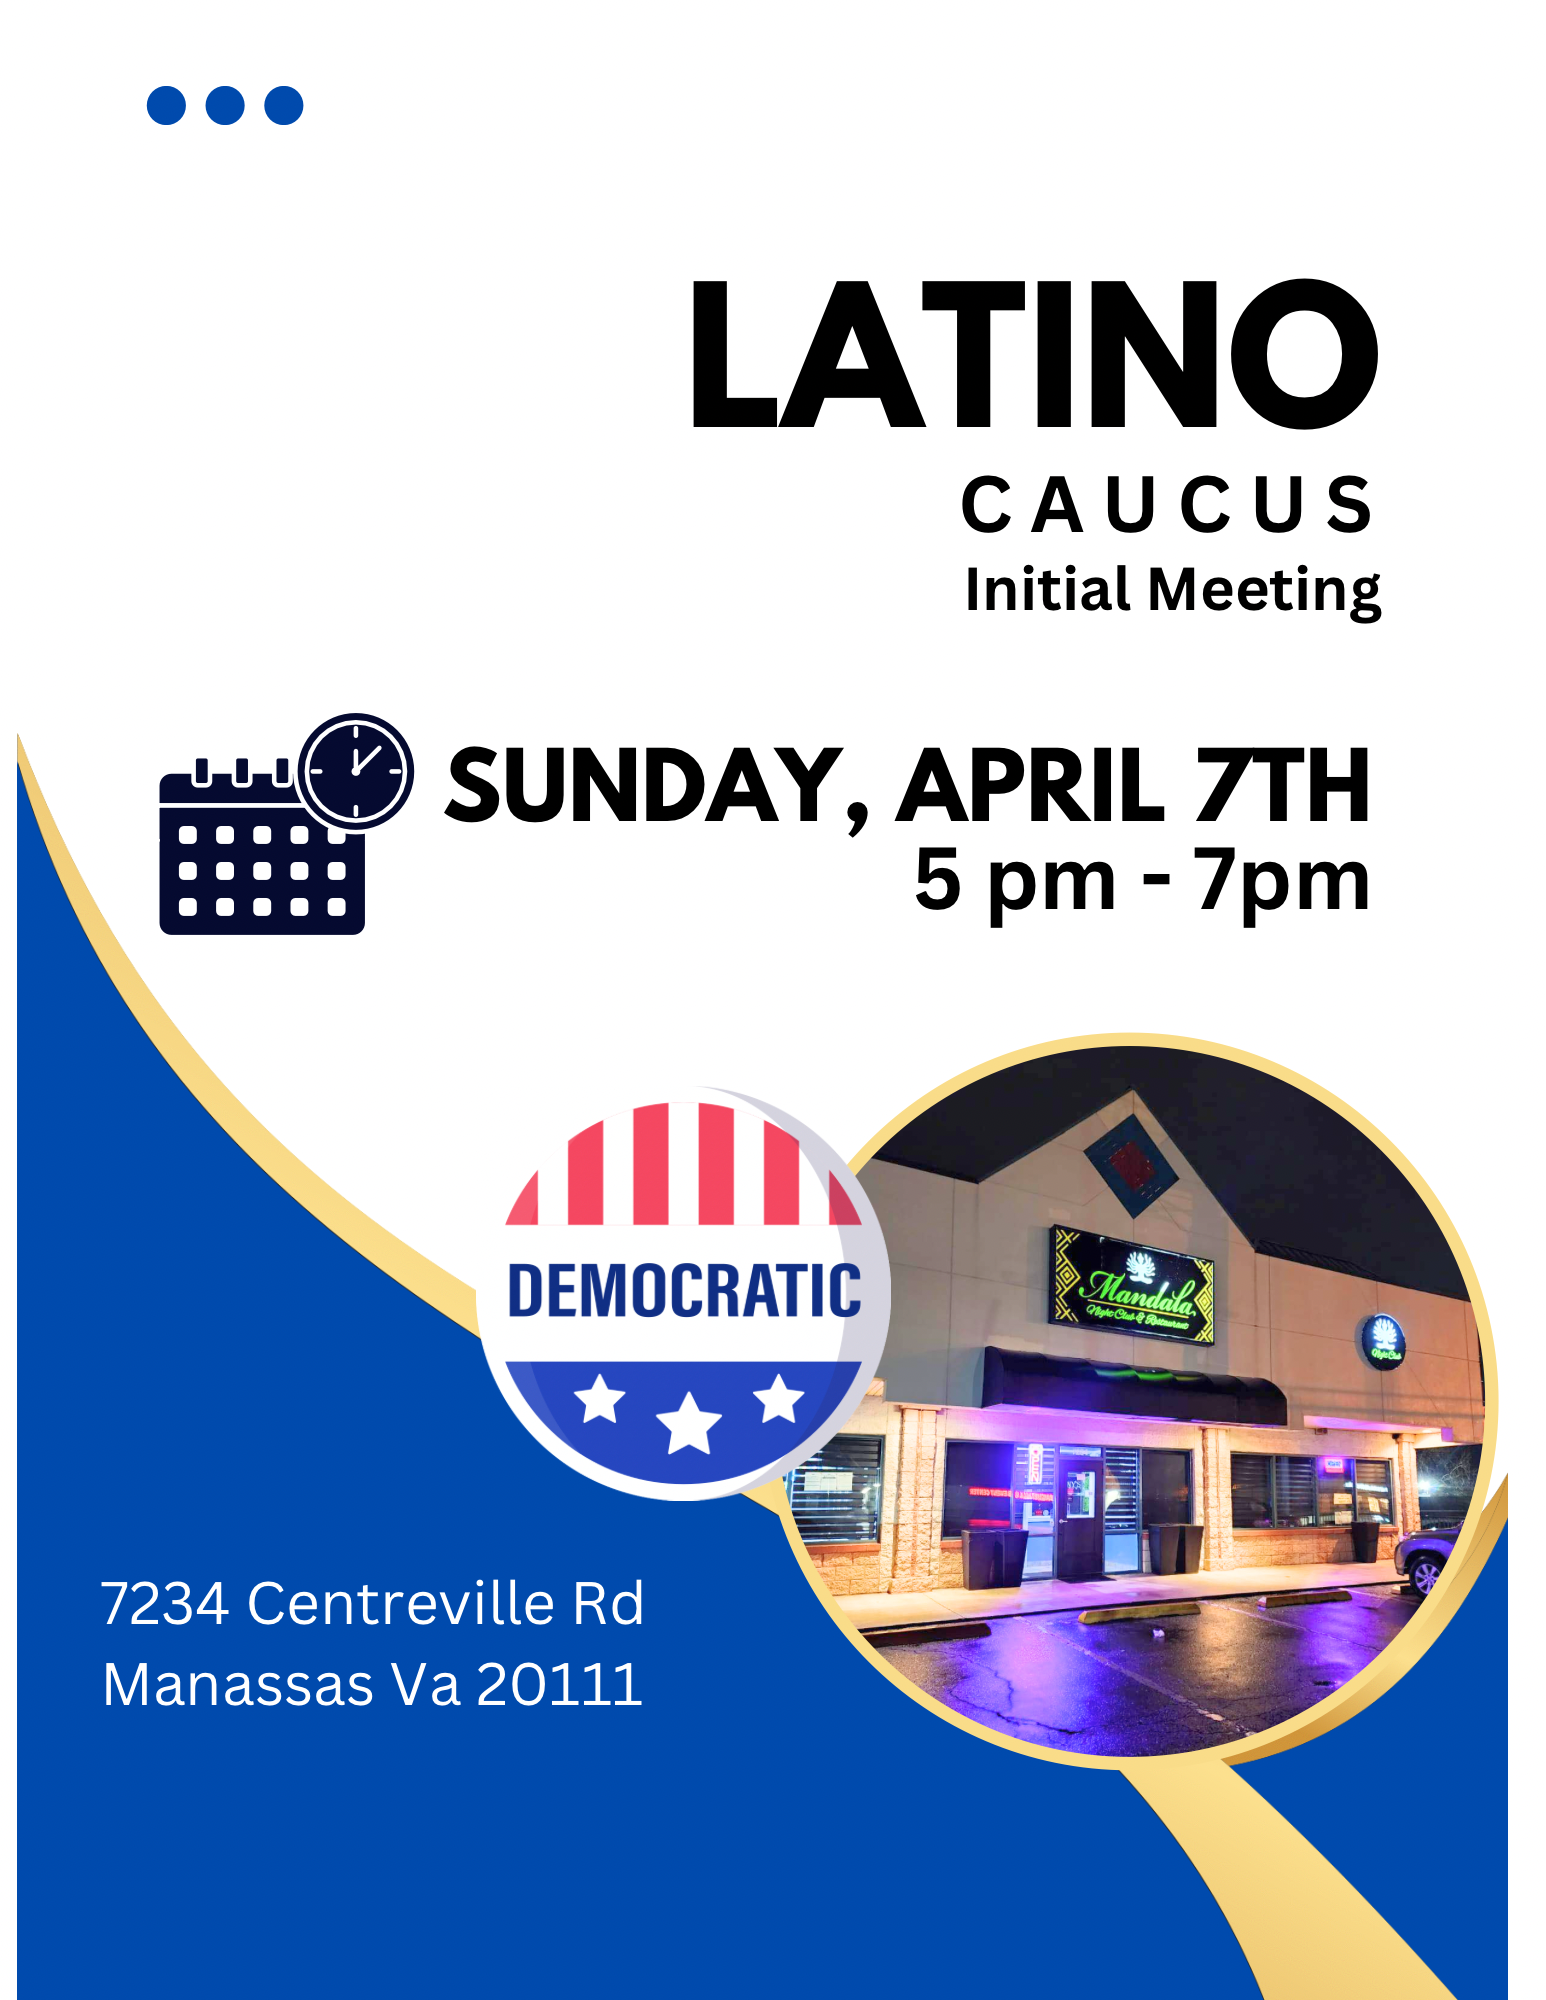 Democratic Latino Caucus Initial Meeting